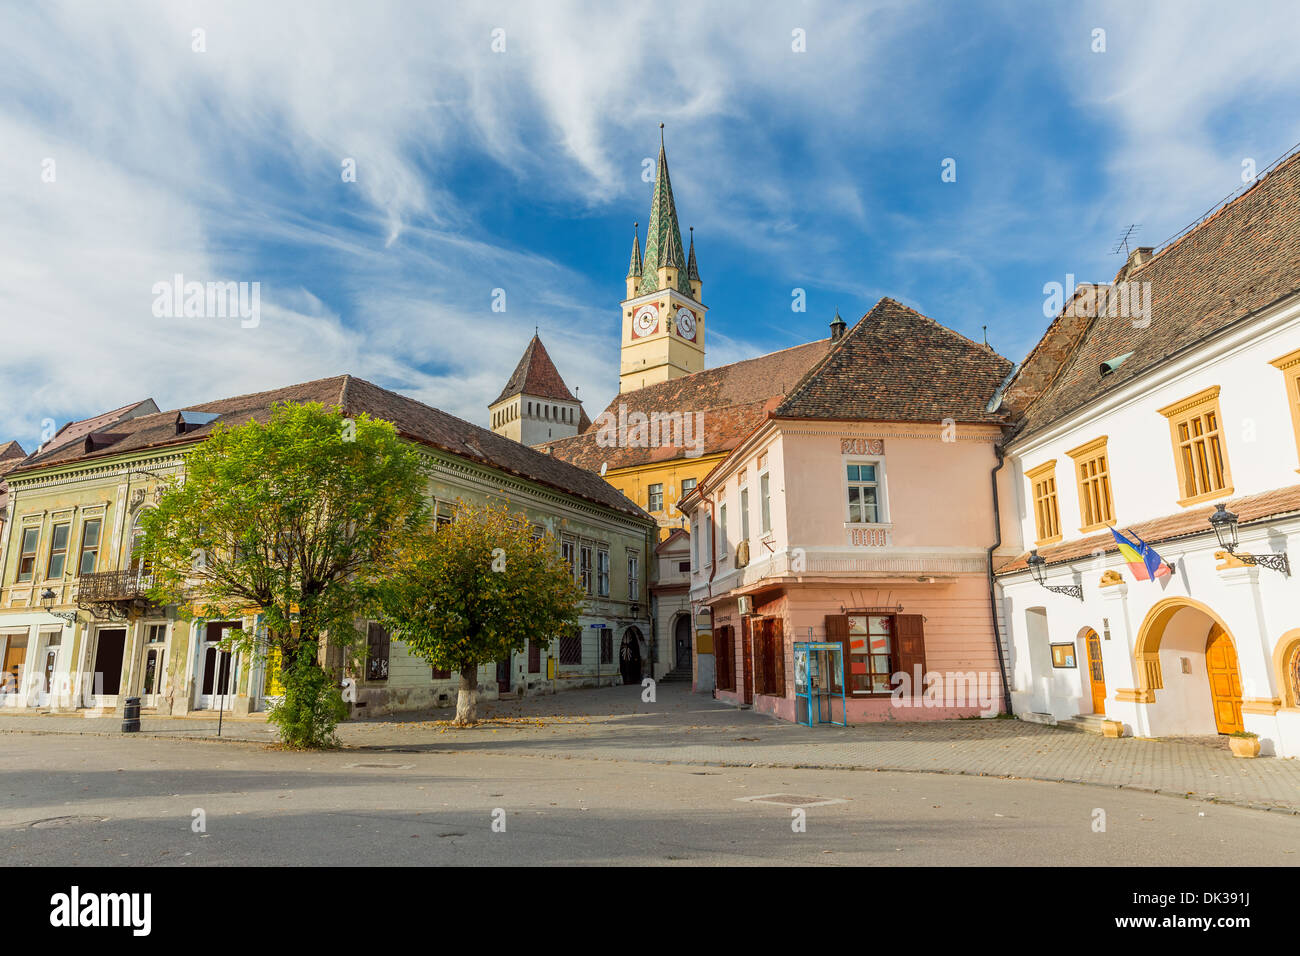 Downtown Medias, Transylvania Stock Photo